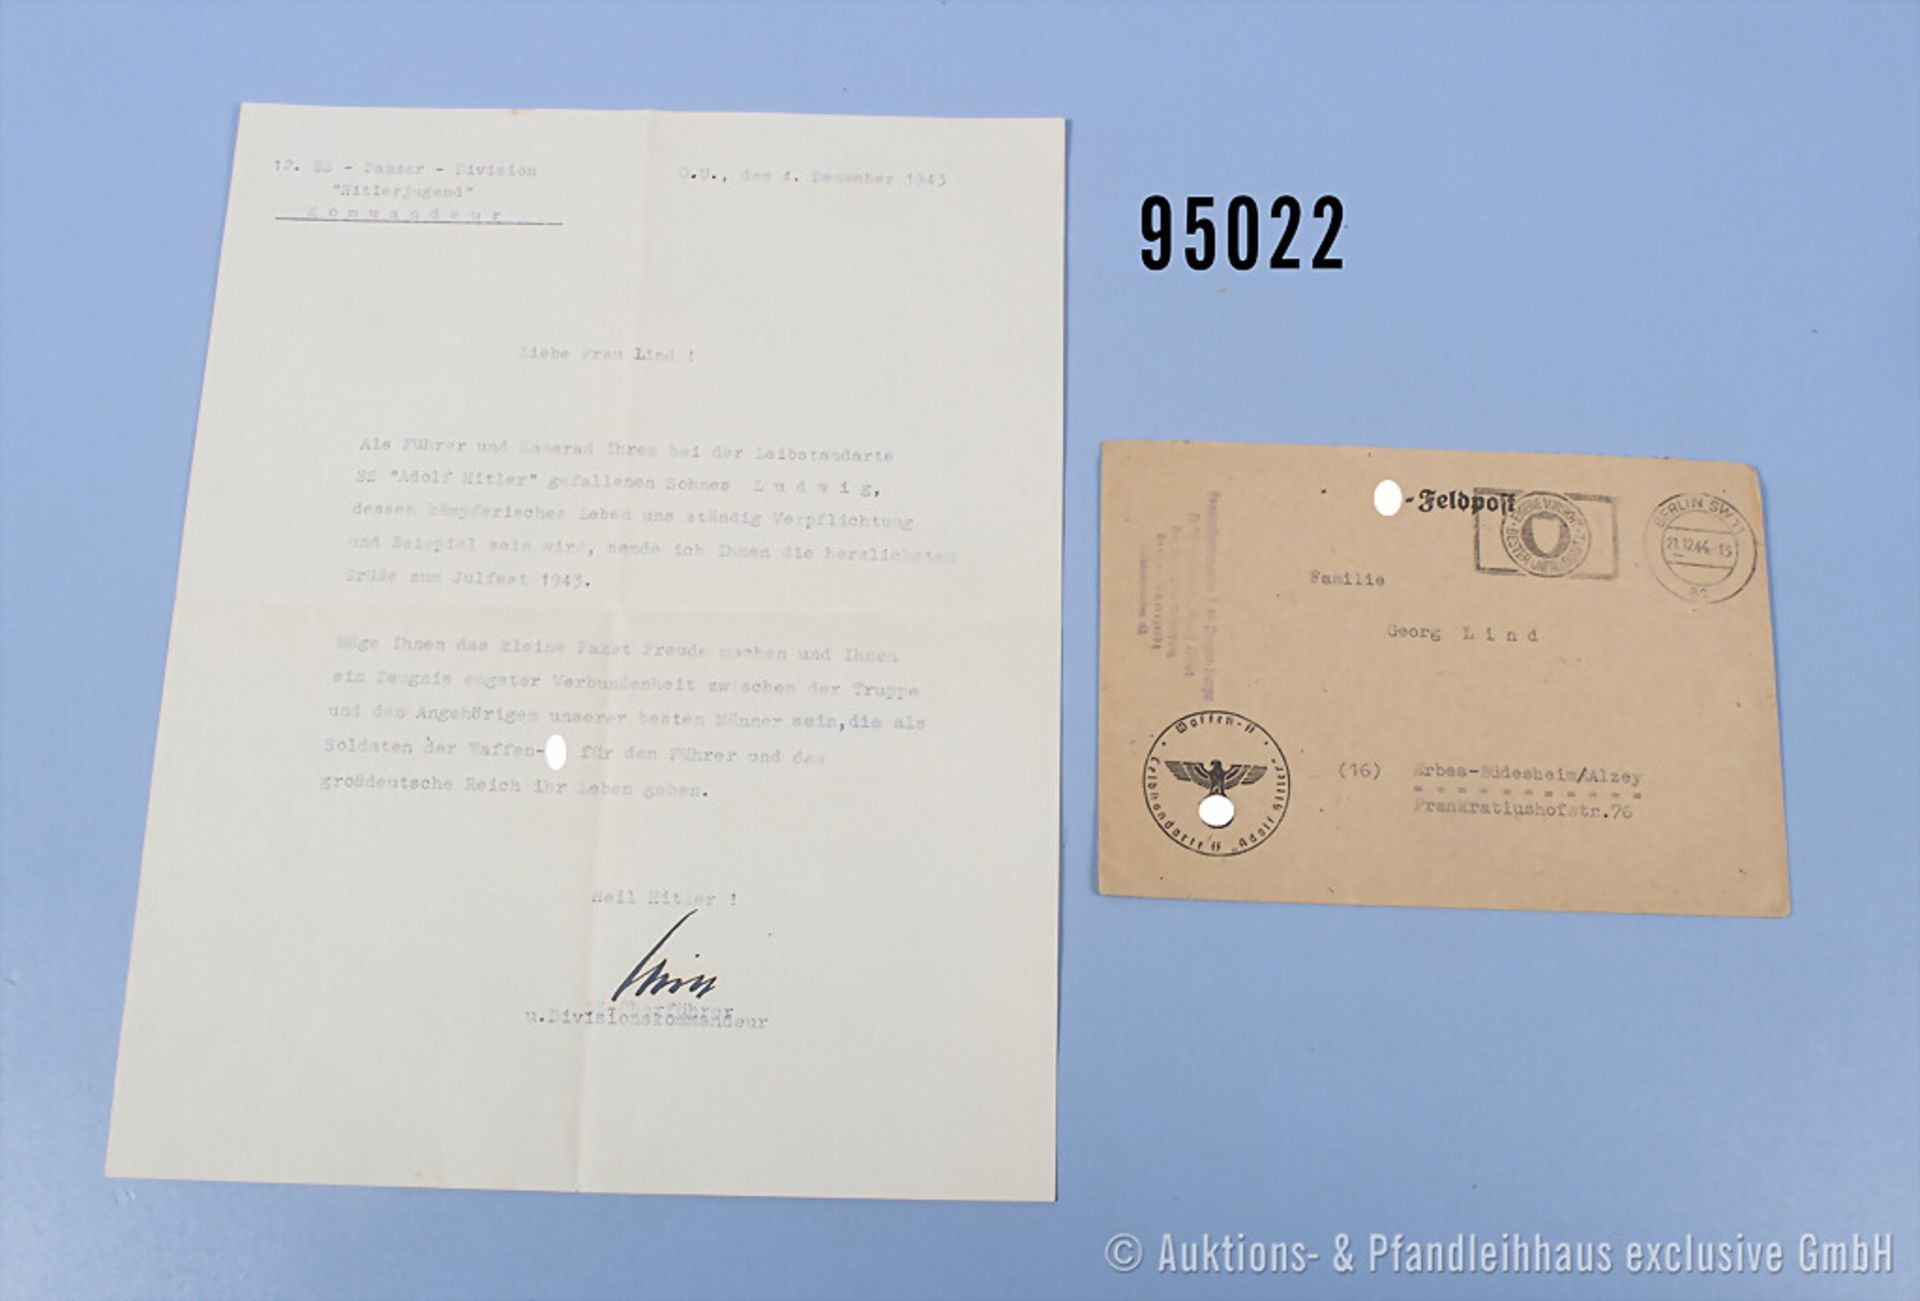 Konv. maschinengeschriebener Brief vom 04.12.1943 an die Eltern eines gefallenen ...